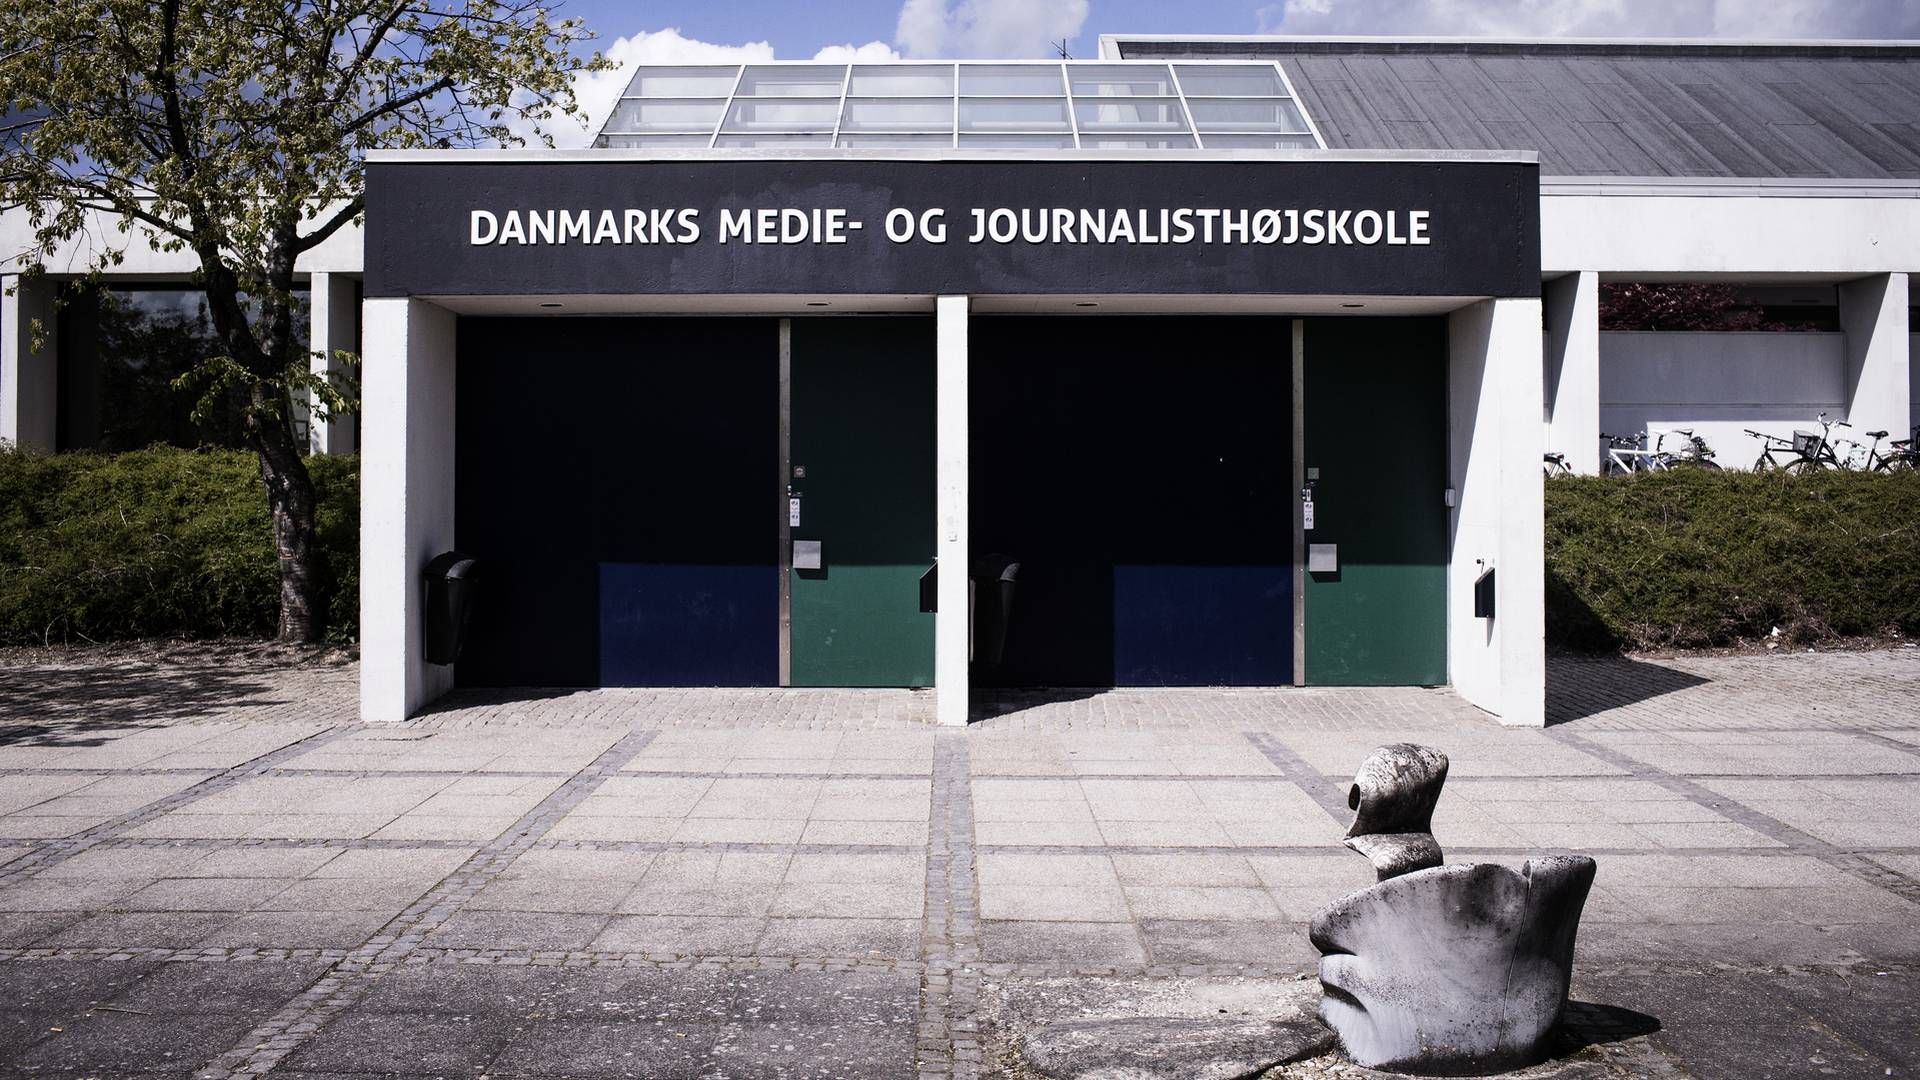 Hovedindgangen til Danmarks Medie- og Journalisthøjskole i Aarhus. Skolen skal i fremtiden bruges som blandt andet fælleshus og museum. | Foto: Thomas Emil Sørensen / Jyllands-Posten